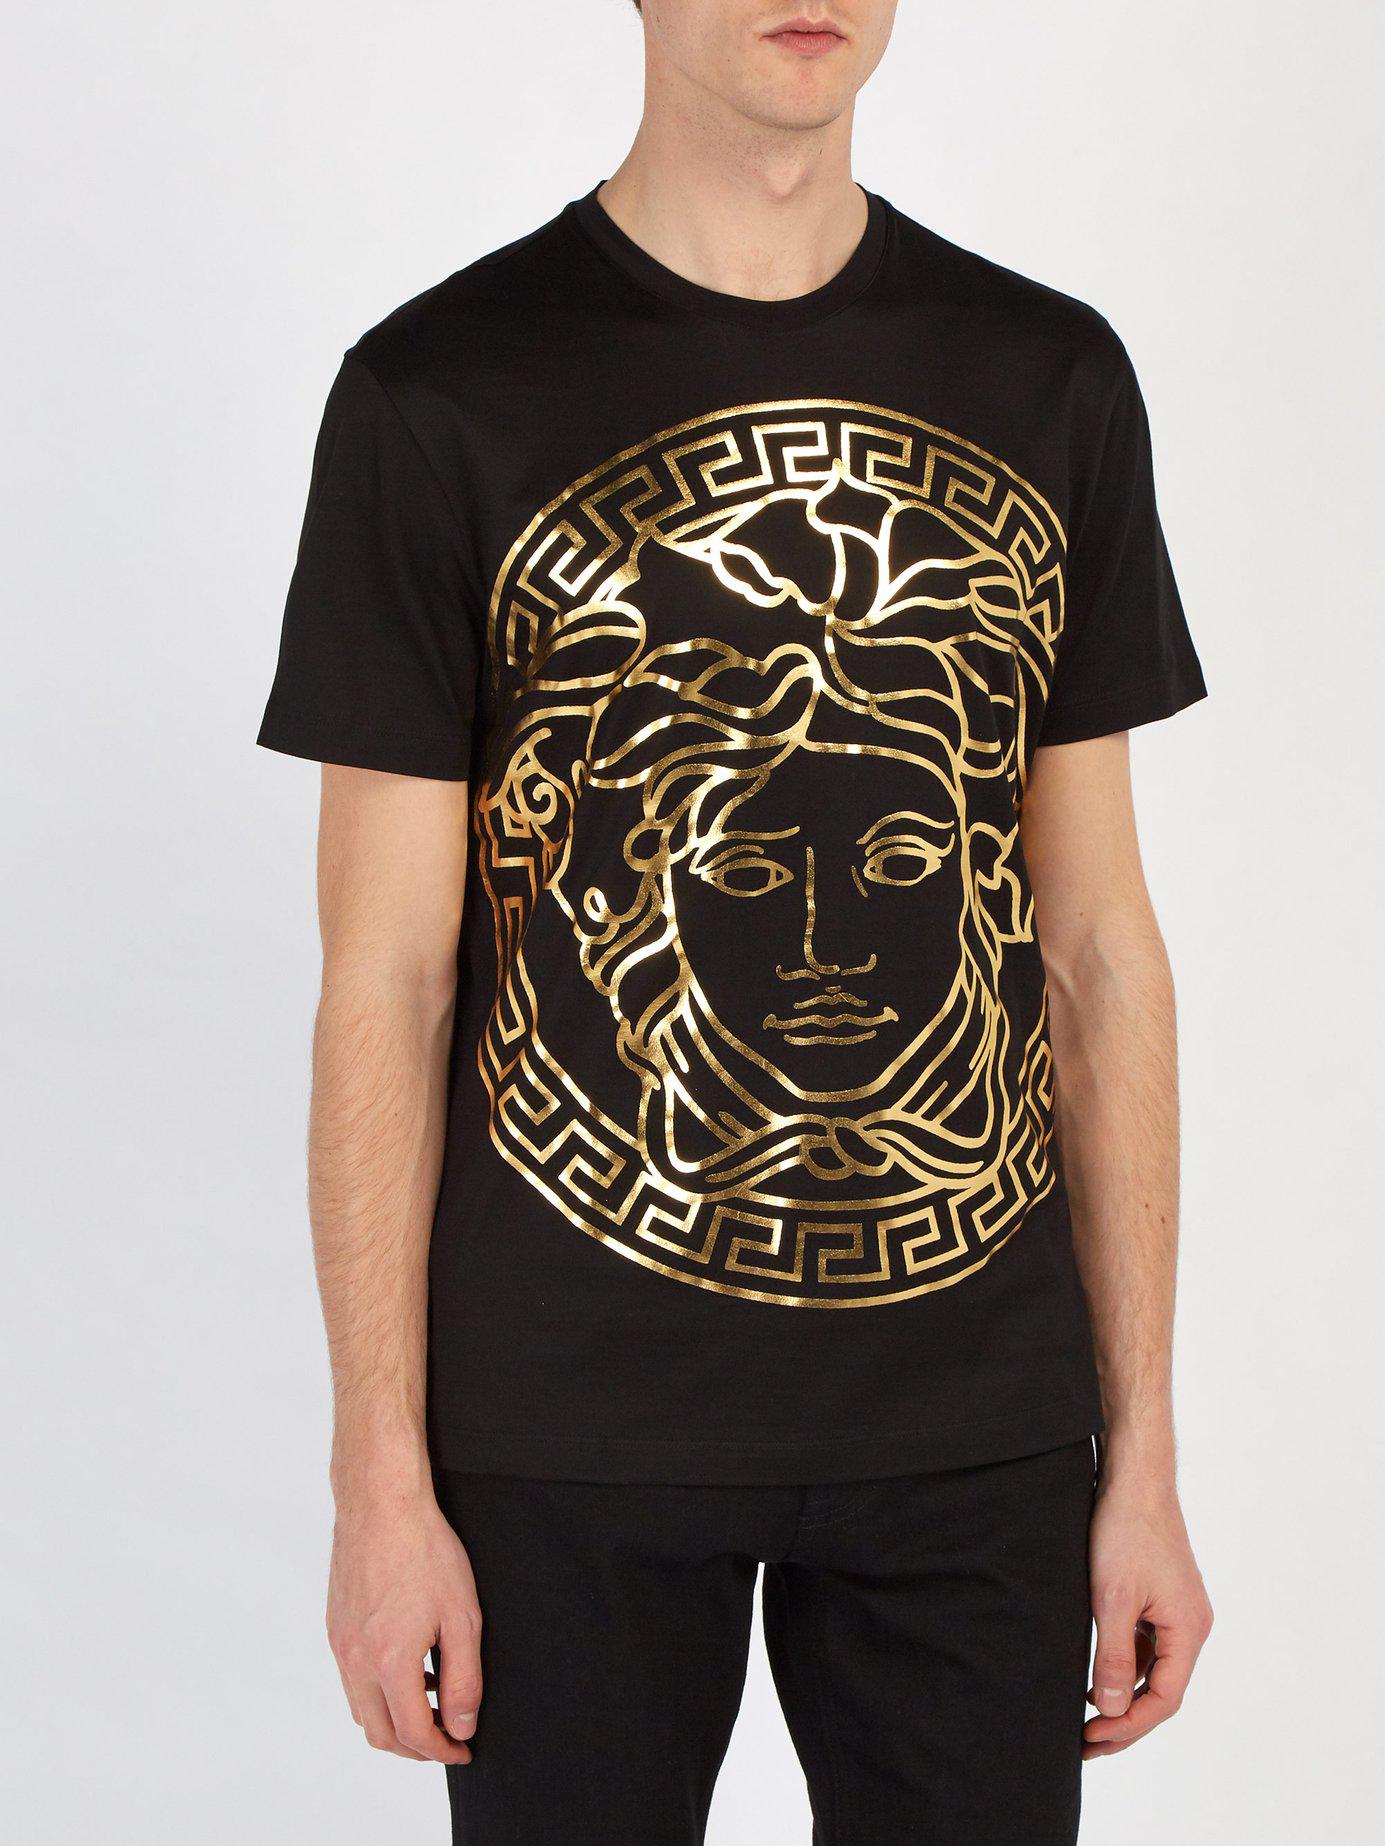 Fantasi bandage Græder Versace Medusa Gold Print T Shirt in Black for Men | Lyst